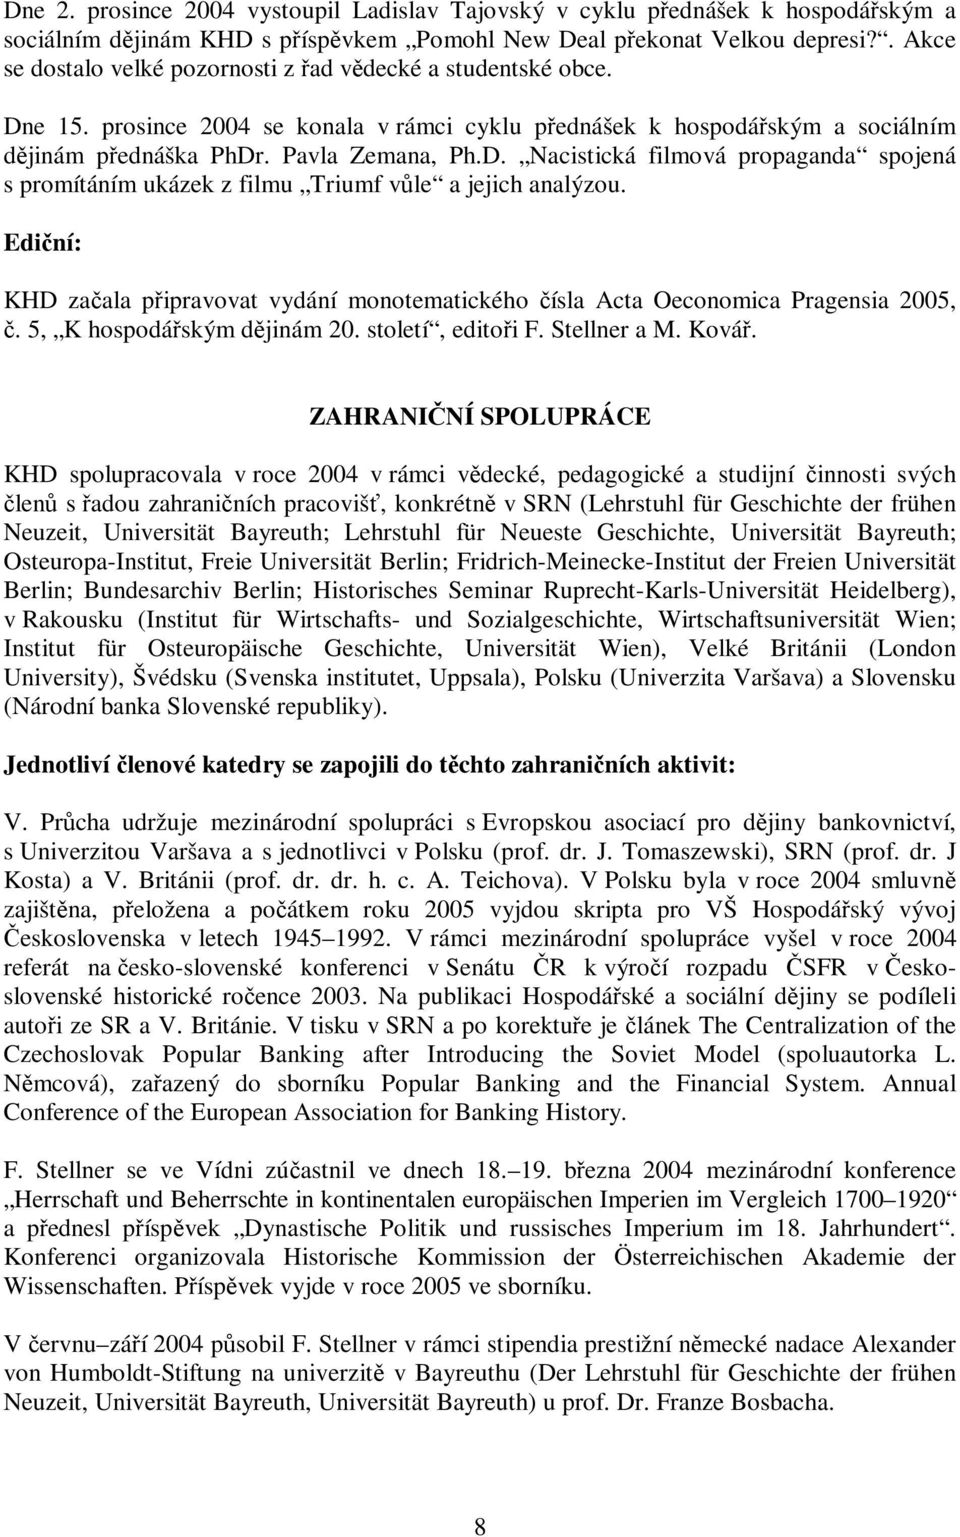 Ediní: KHD zaala pipravovat vydání monotematického ísla Acta Oeconomica Pragensia 2005,. 5, K hospodáským djinám 20. století, editoi F. Stellner a M. Ková.